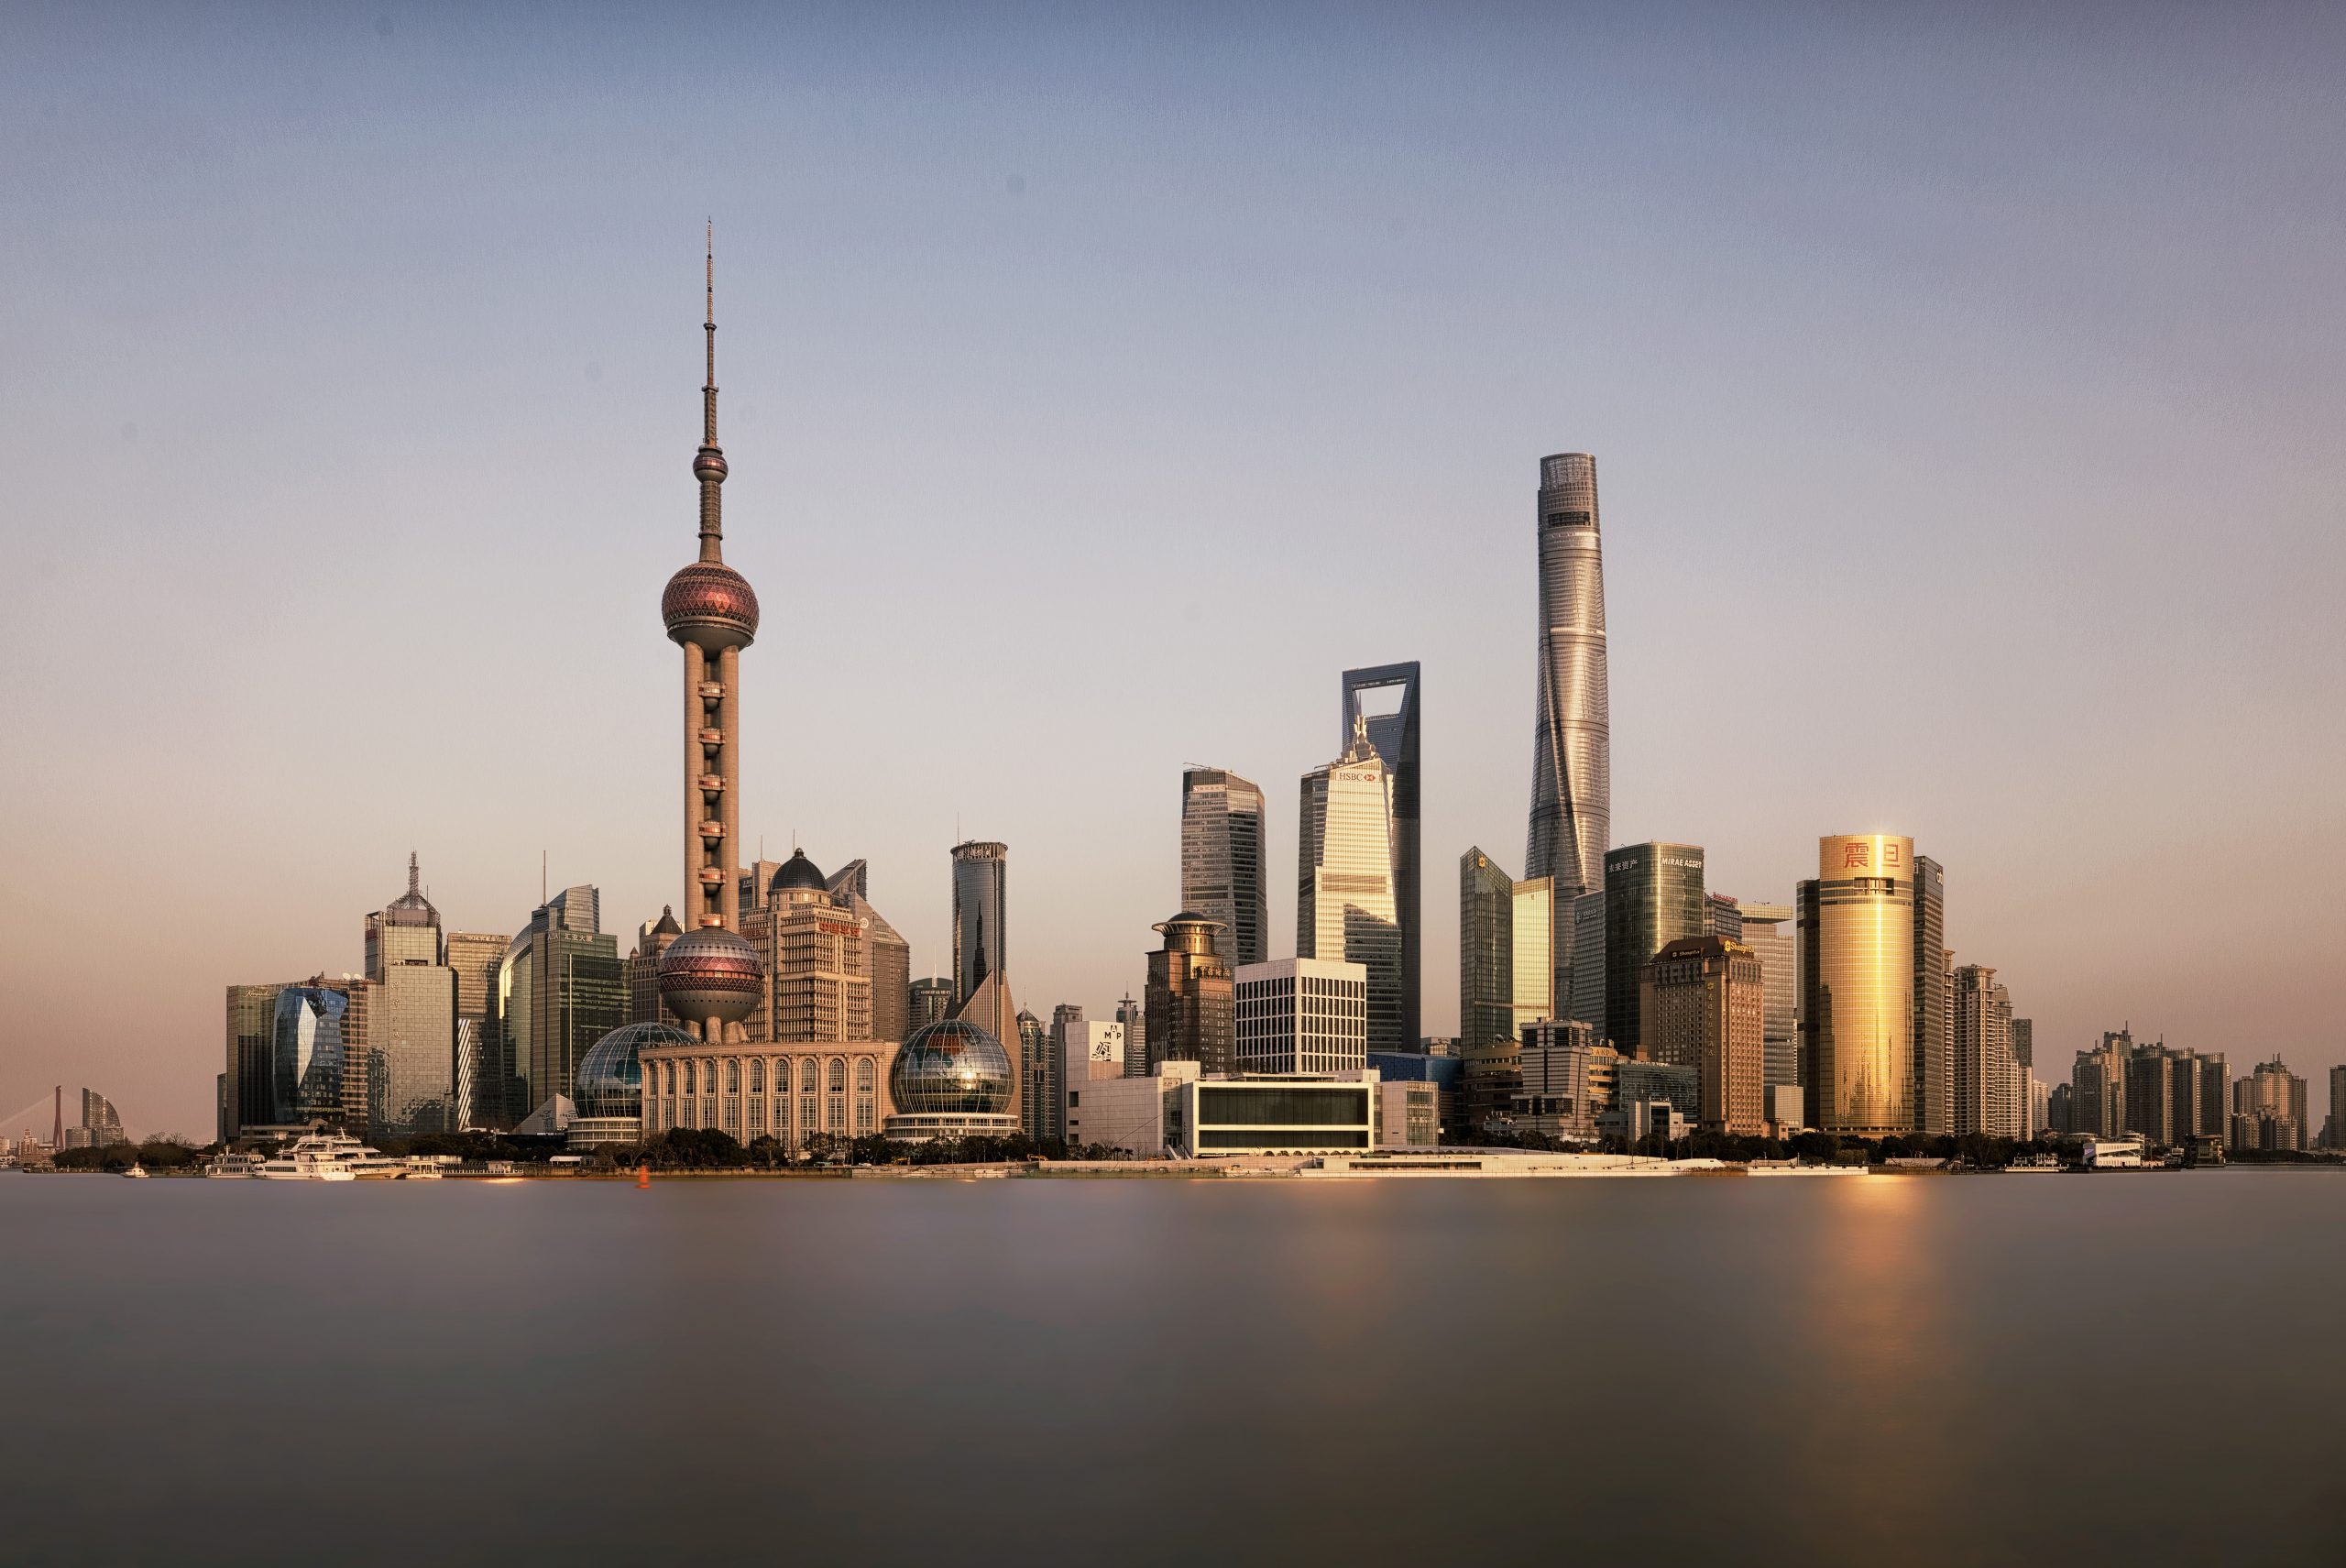 Shanghai China catat rekor investasi asing langsung tertinggi pada 2021